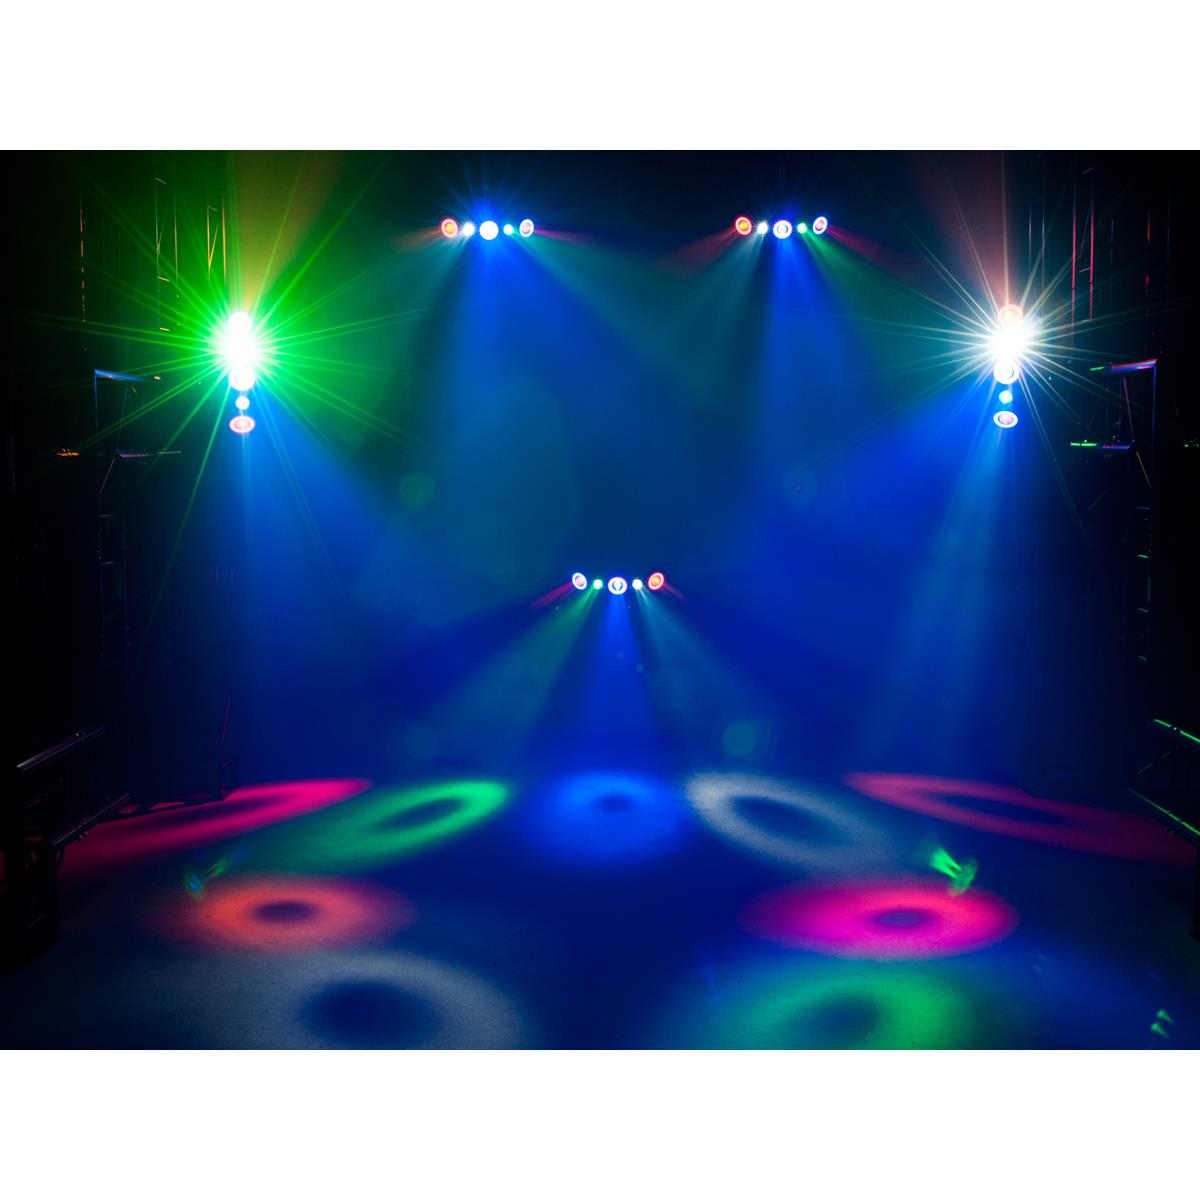 LED Hybrid Strahleneffekt - vollwertiger Party Lichteffekt mit Farben und Strahlen